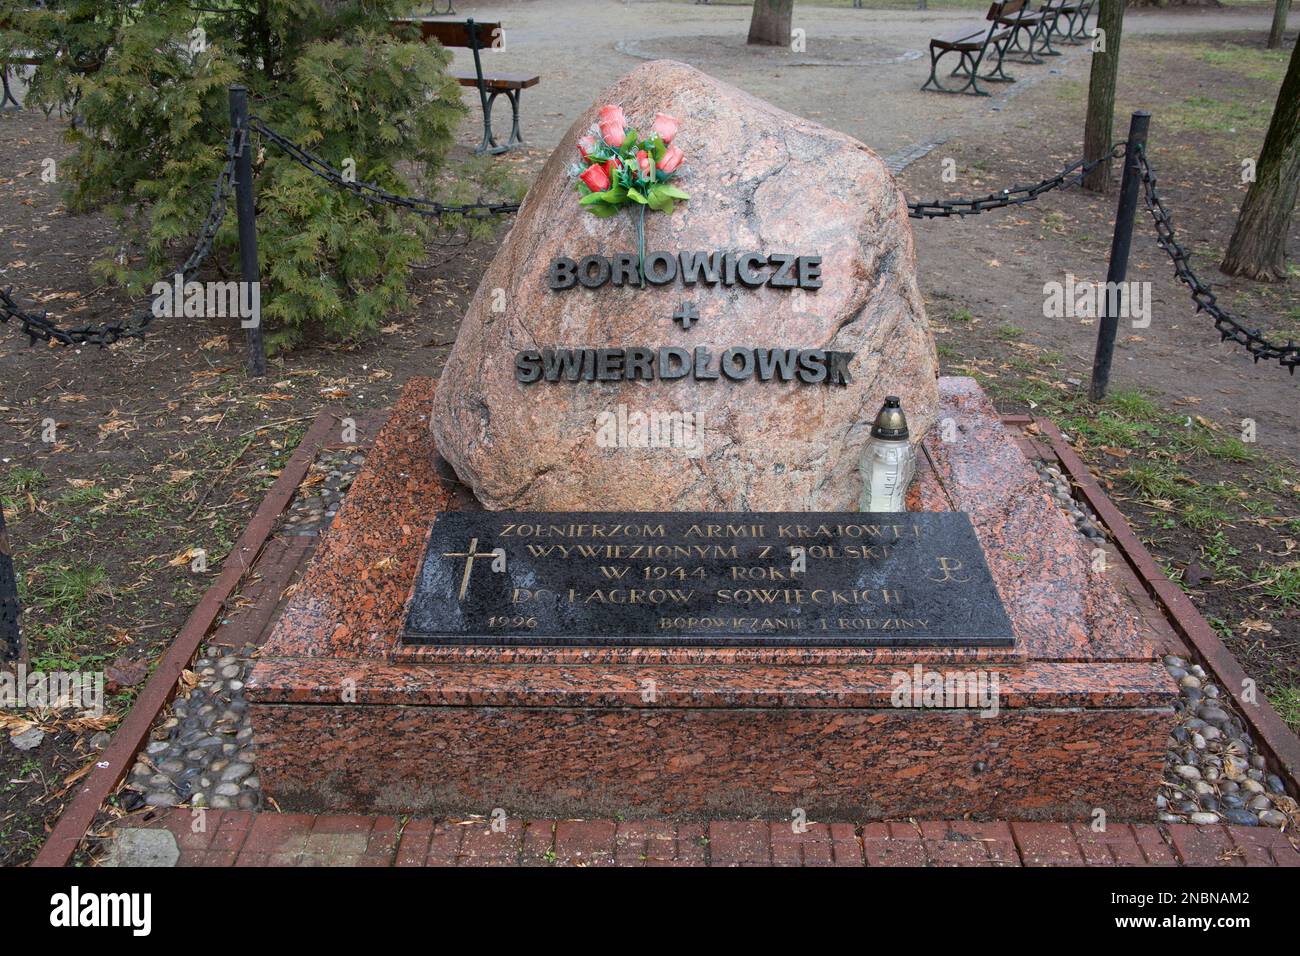 Memoriale alla memoria dei soldati dell'esercito domestico deportati ai gulag sovietici in Borowicze e in via di Skwer di Sverdlovsk Sybiraków Chłodna Varsavia Polonia Foto Stock